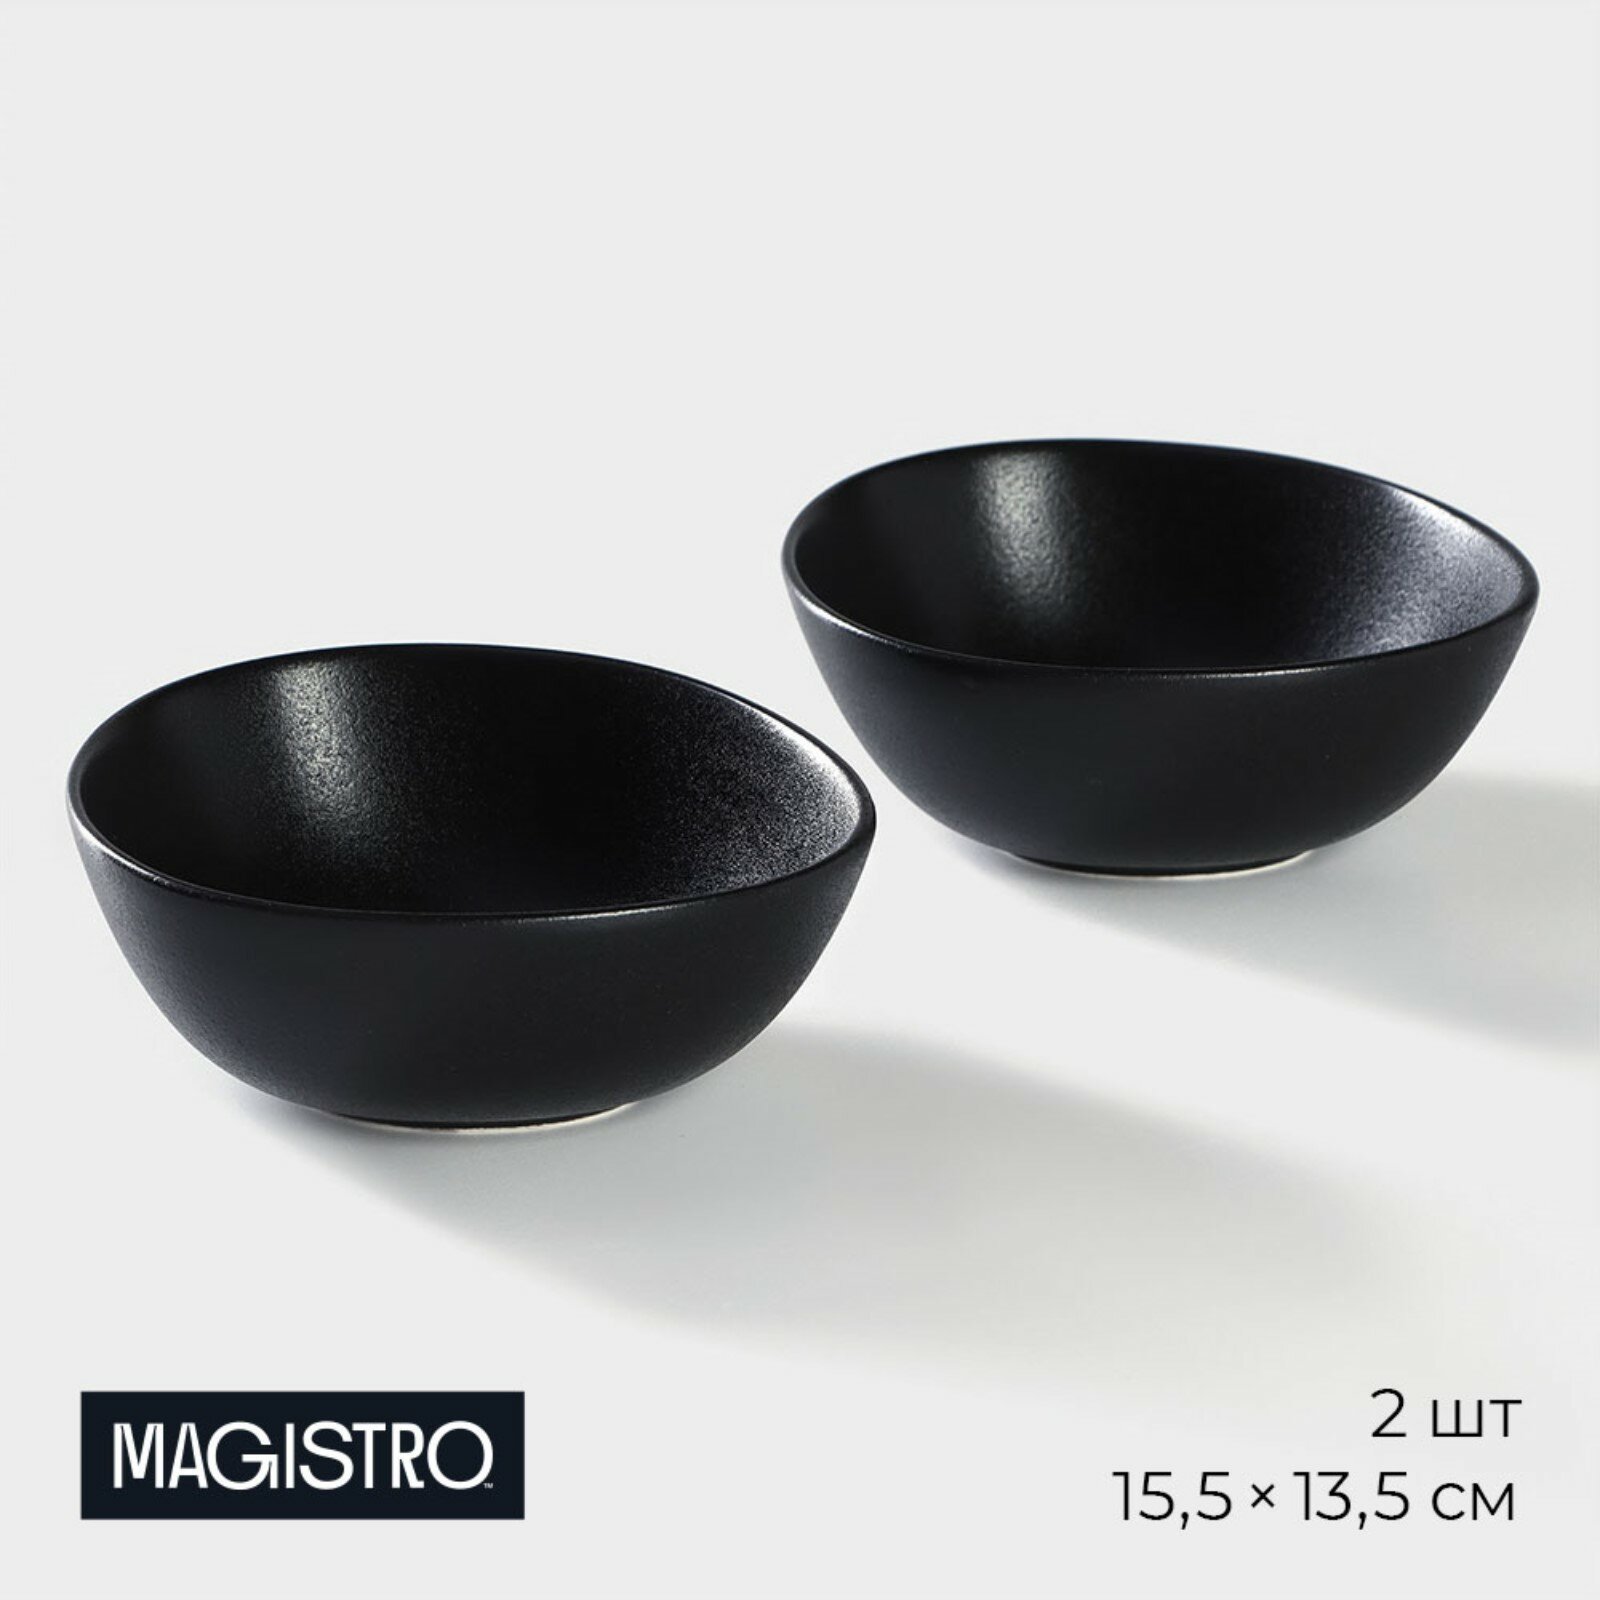 Салатник Magistro Carbon фарфоровый, тарелка глубокая, набор 2 шт, цвет чёрный